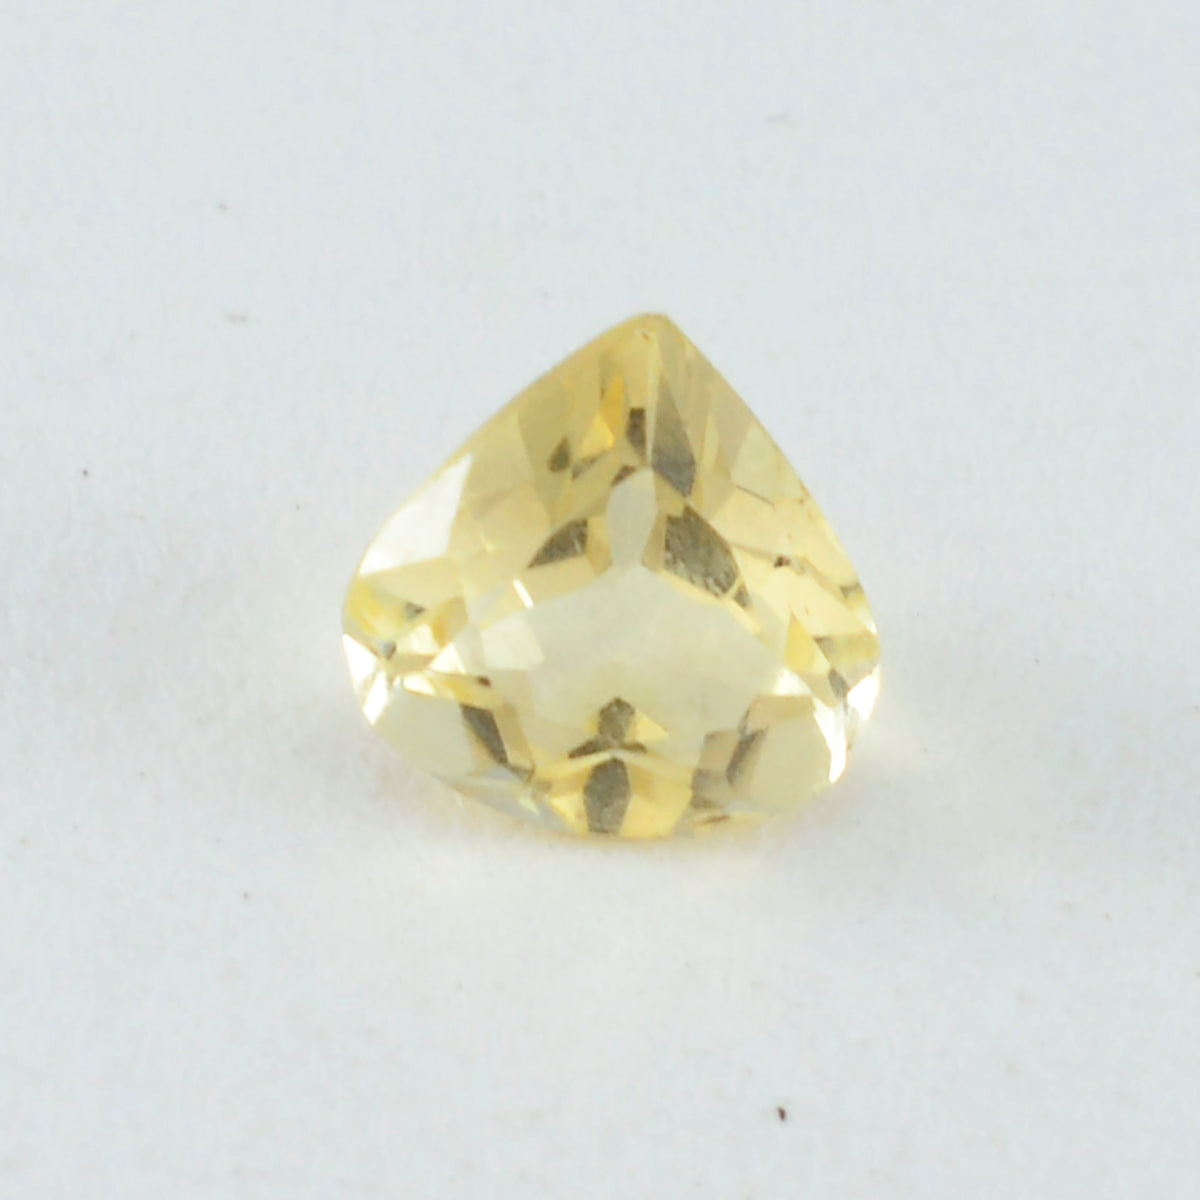 riyogems 1 шт. настоящий желтый цитрин ограненный 9x9 мм в форме сердца, красивый качественный камень